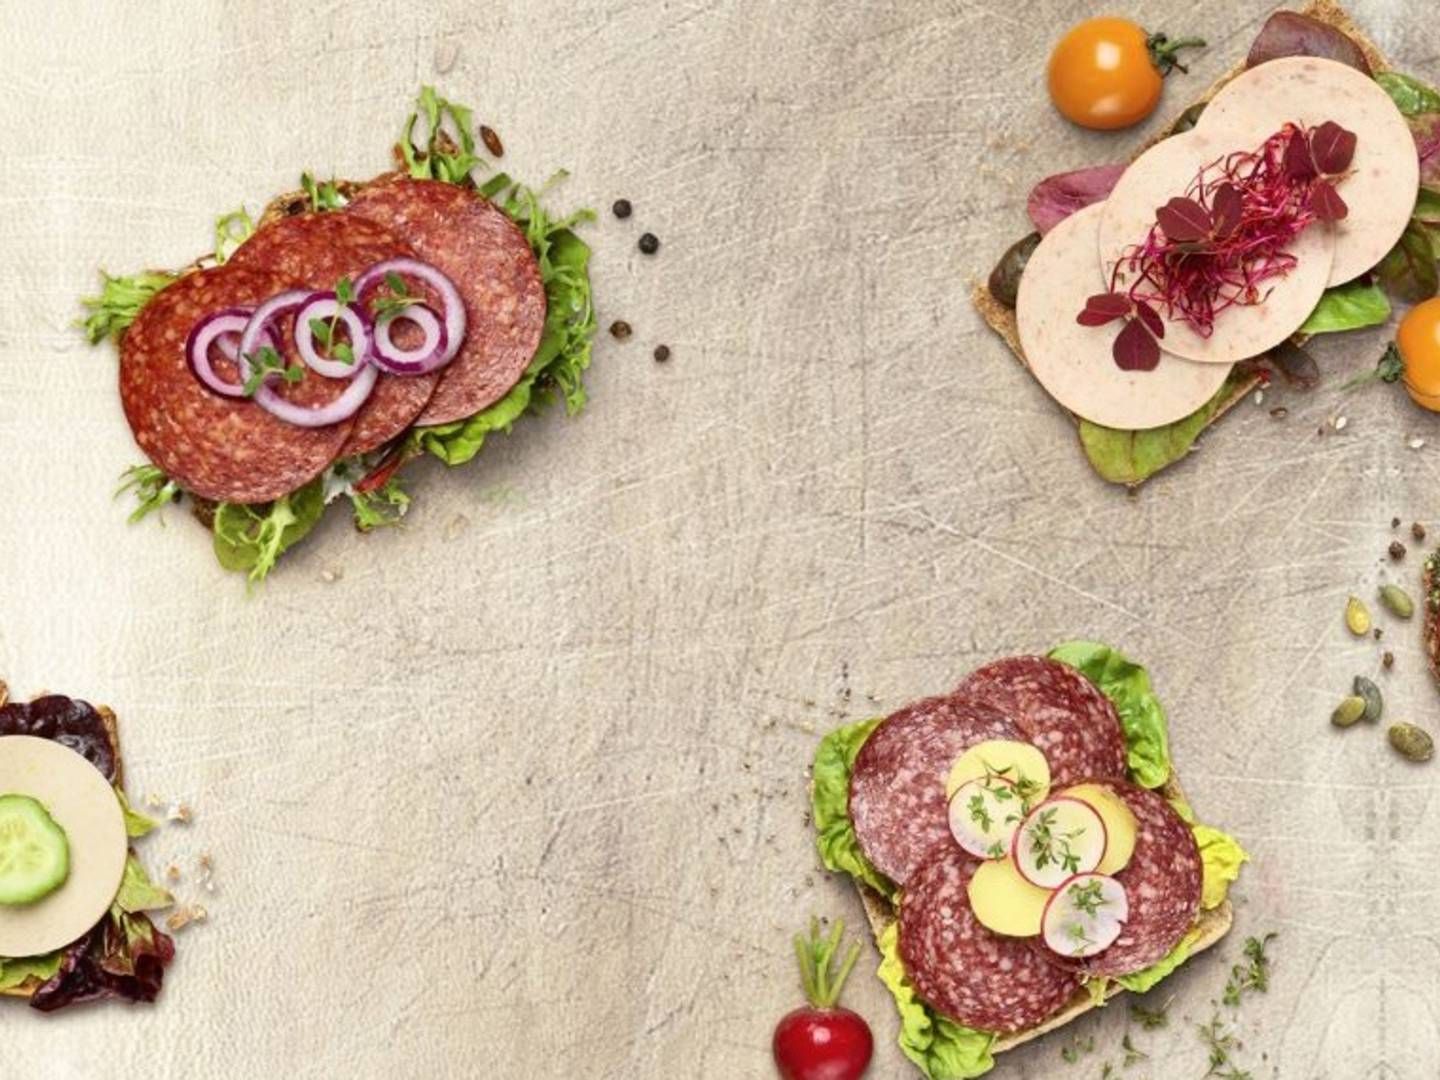 Som supplement til de kendte kødvarianter lancerer Atria Danmark nu et 3-Stjernet-produkt med mindre kød. | Foto: Atria Danmark PR-foto